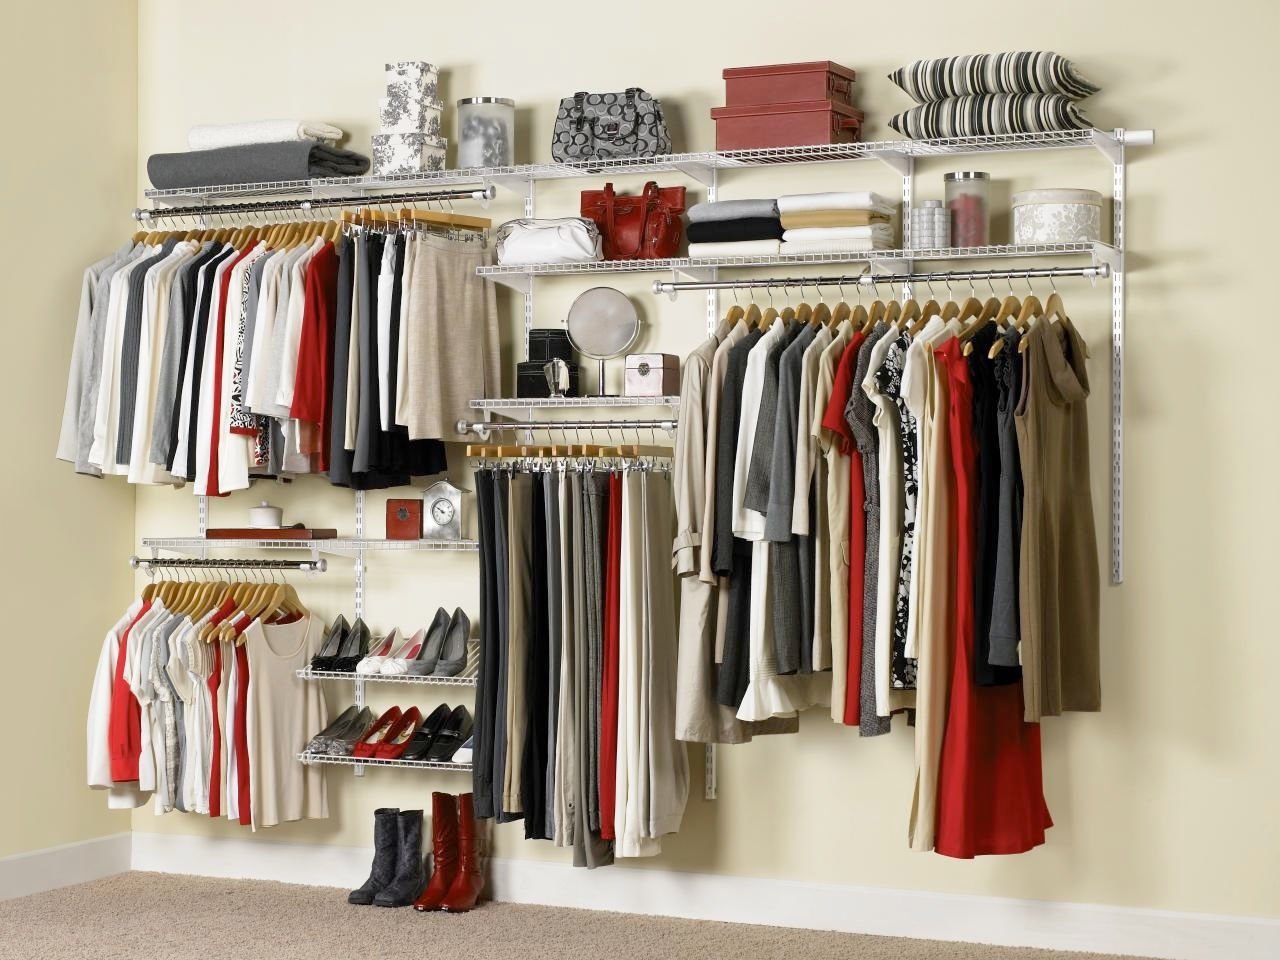 Система хранения предметов. Rubbermaid гардеробные системы. Система хранения вещей в гардеробной. Открытый гардероб для одежды. Полки для вещей в гардеробную.